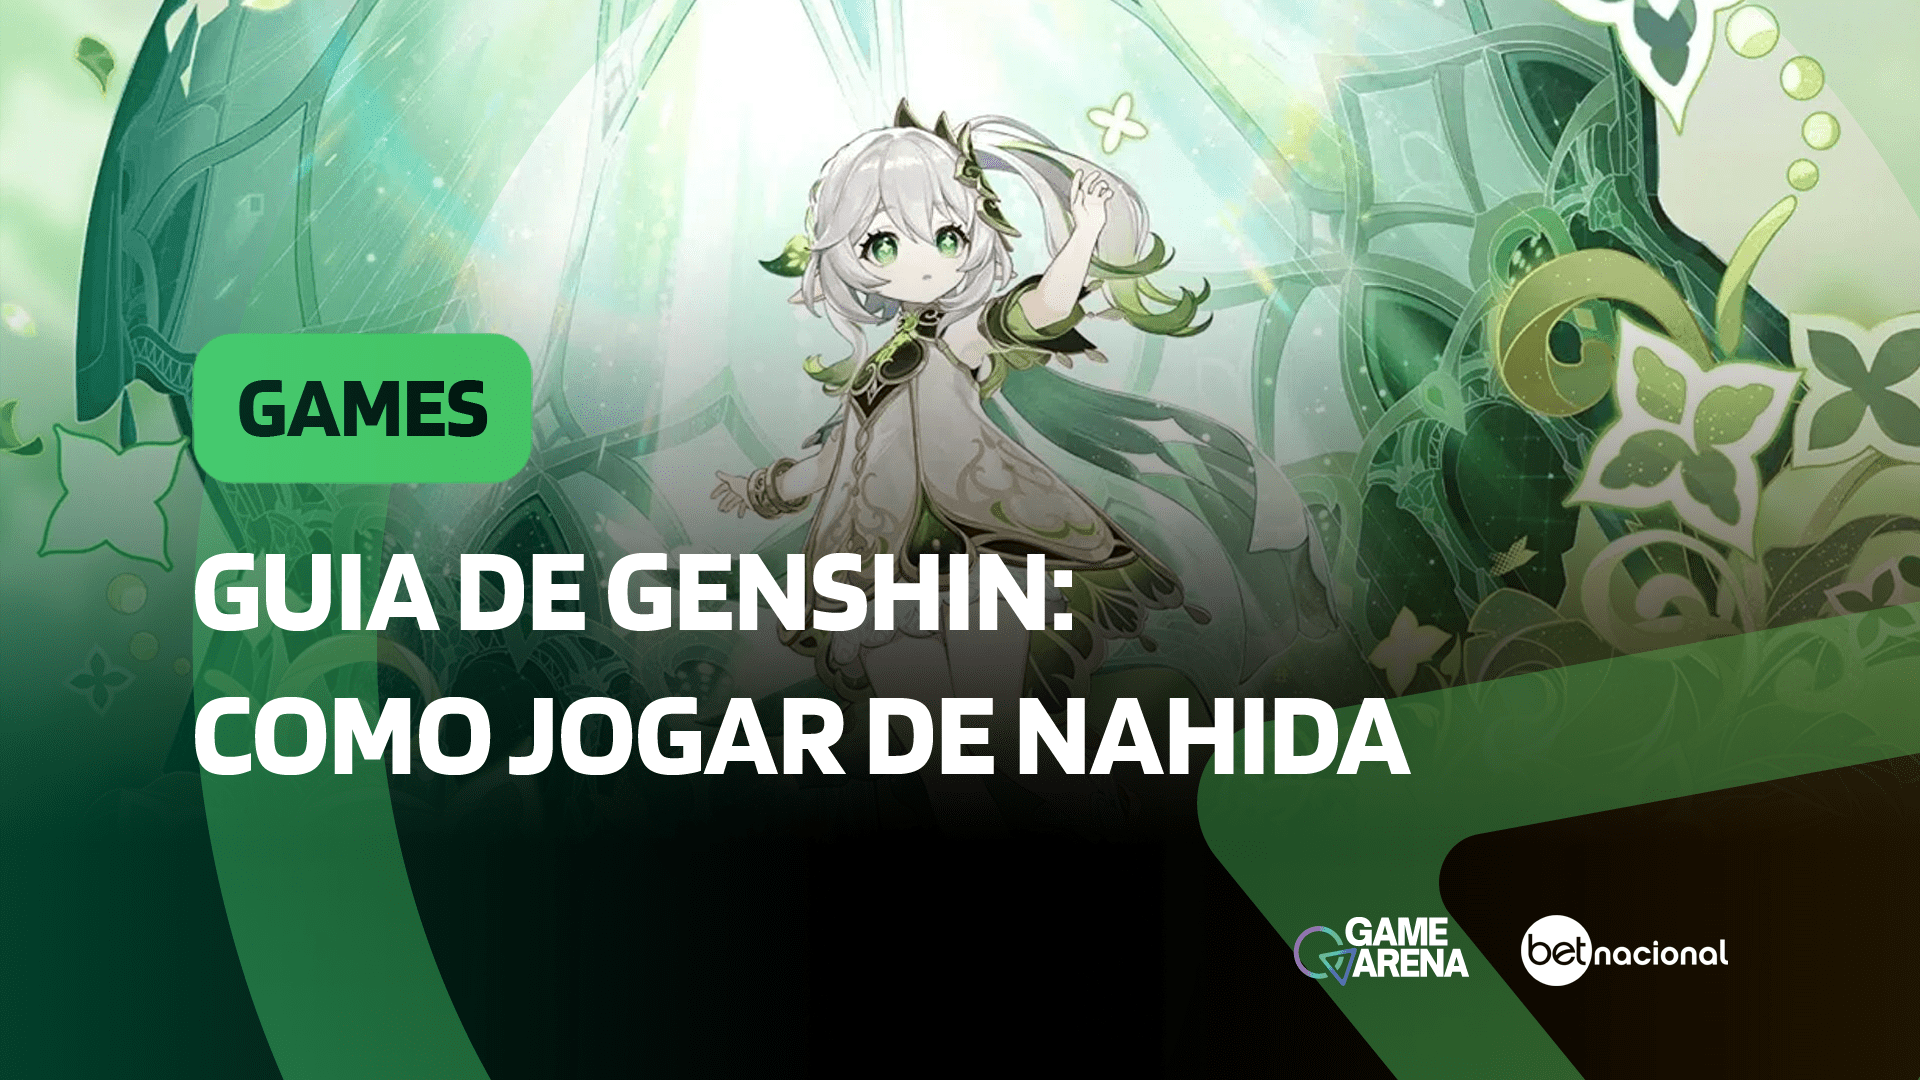 Os 10 personagens de Genshin Impact mais populares! - Olá Nerd - Games